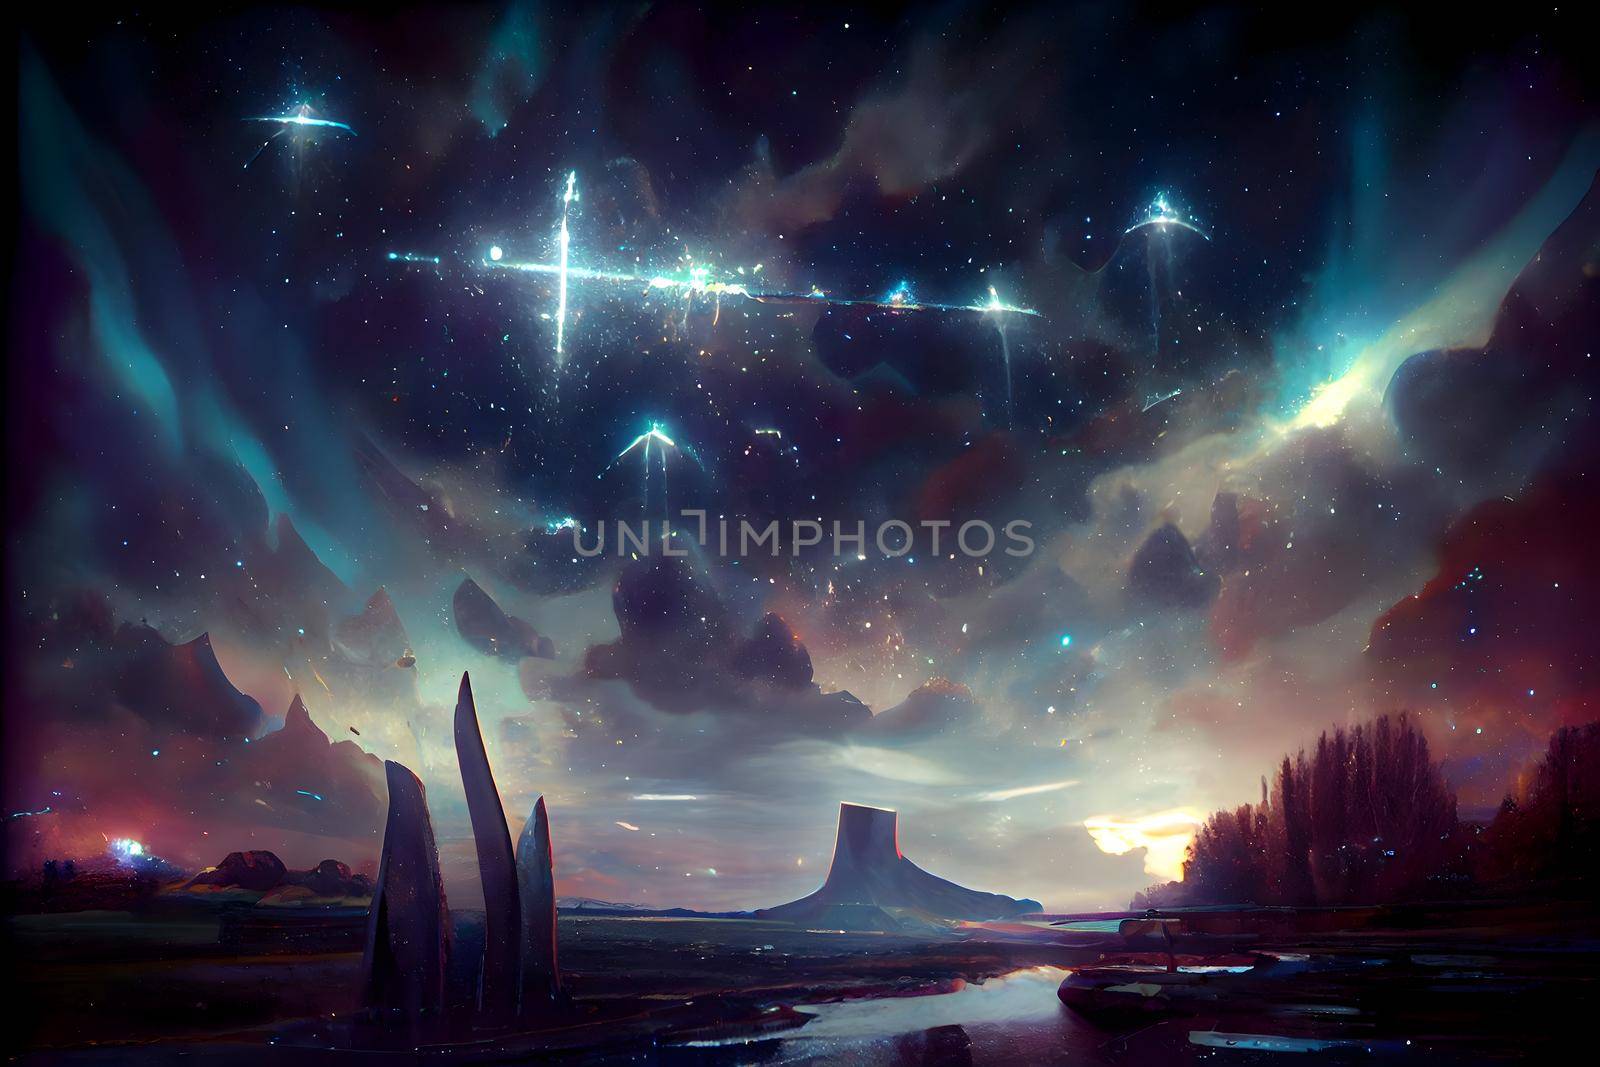 starry omen in the night in alien planet landscape, neural network generated art by z1b